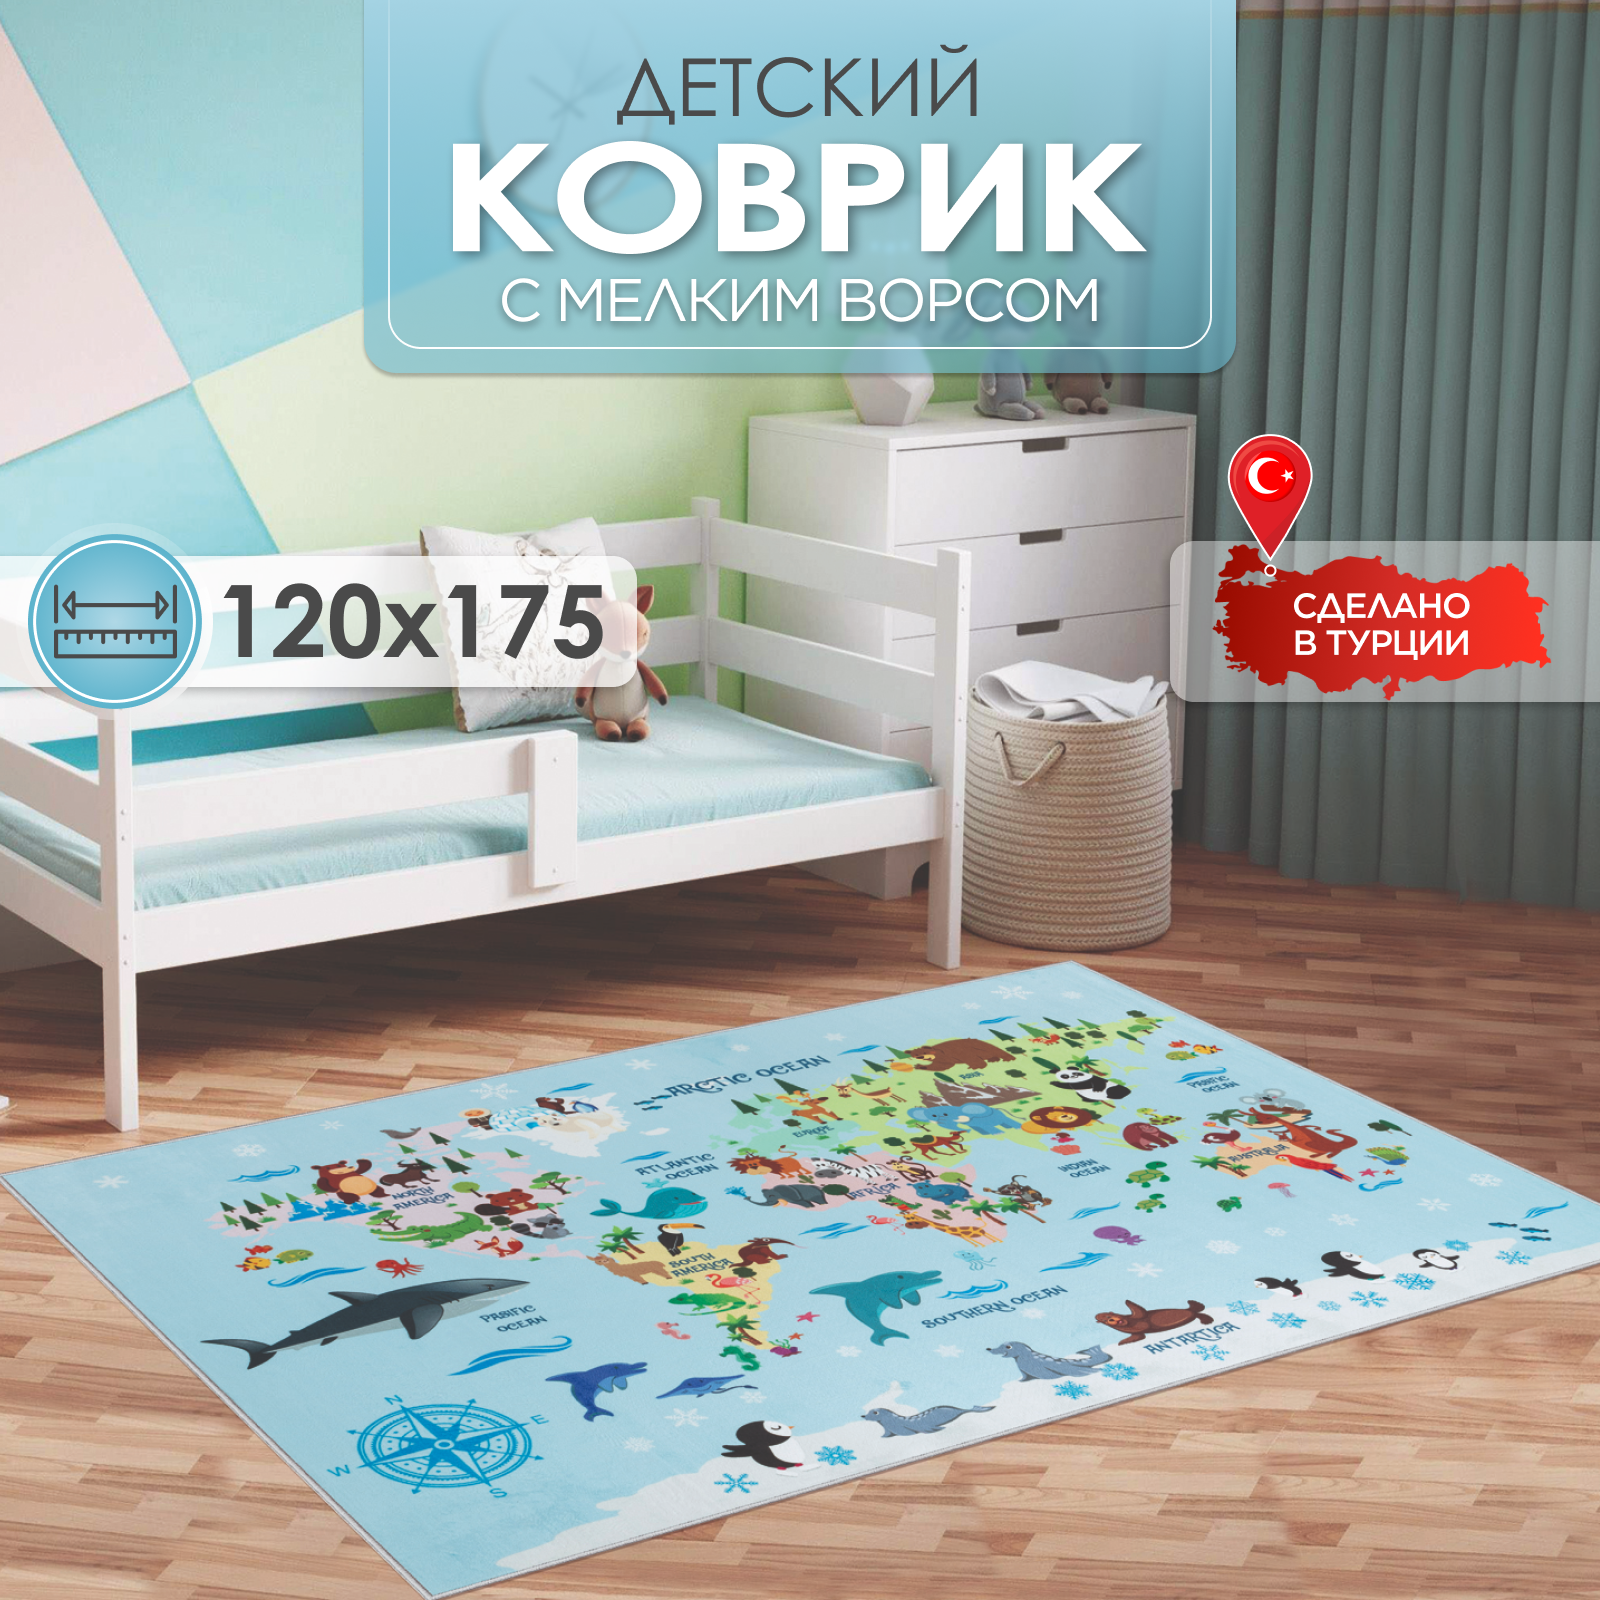 Ковер комнатный детский KOVRIKANA карта мира развивающий голубой животные компас 120см на 175см - фото 1